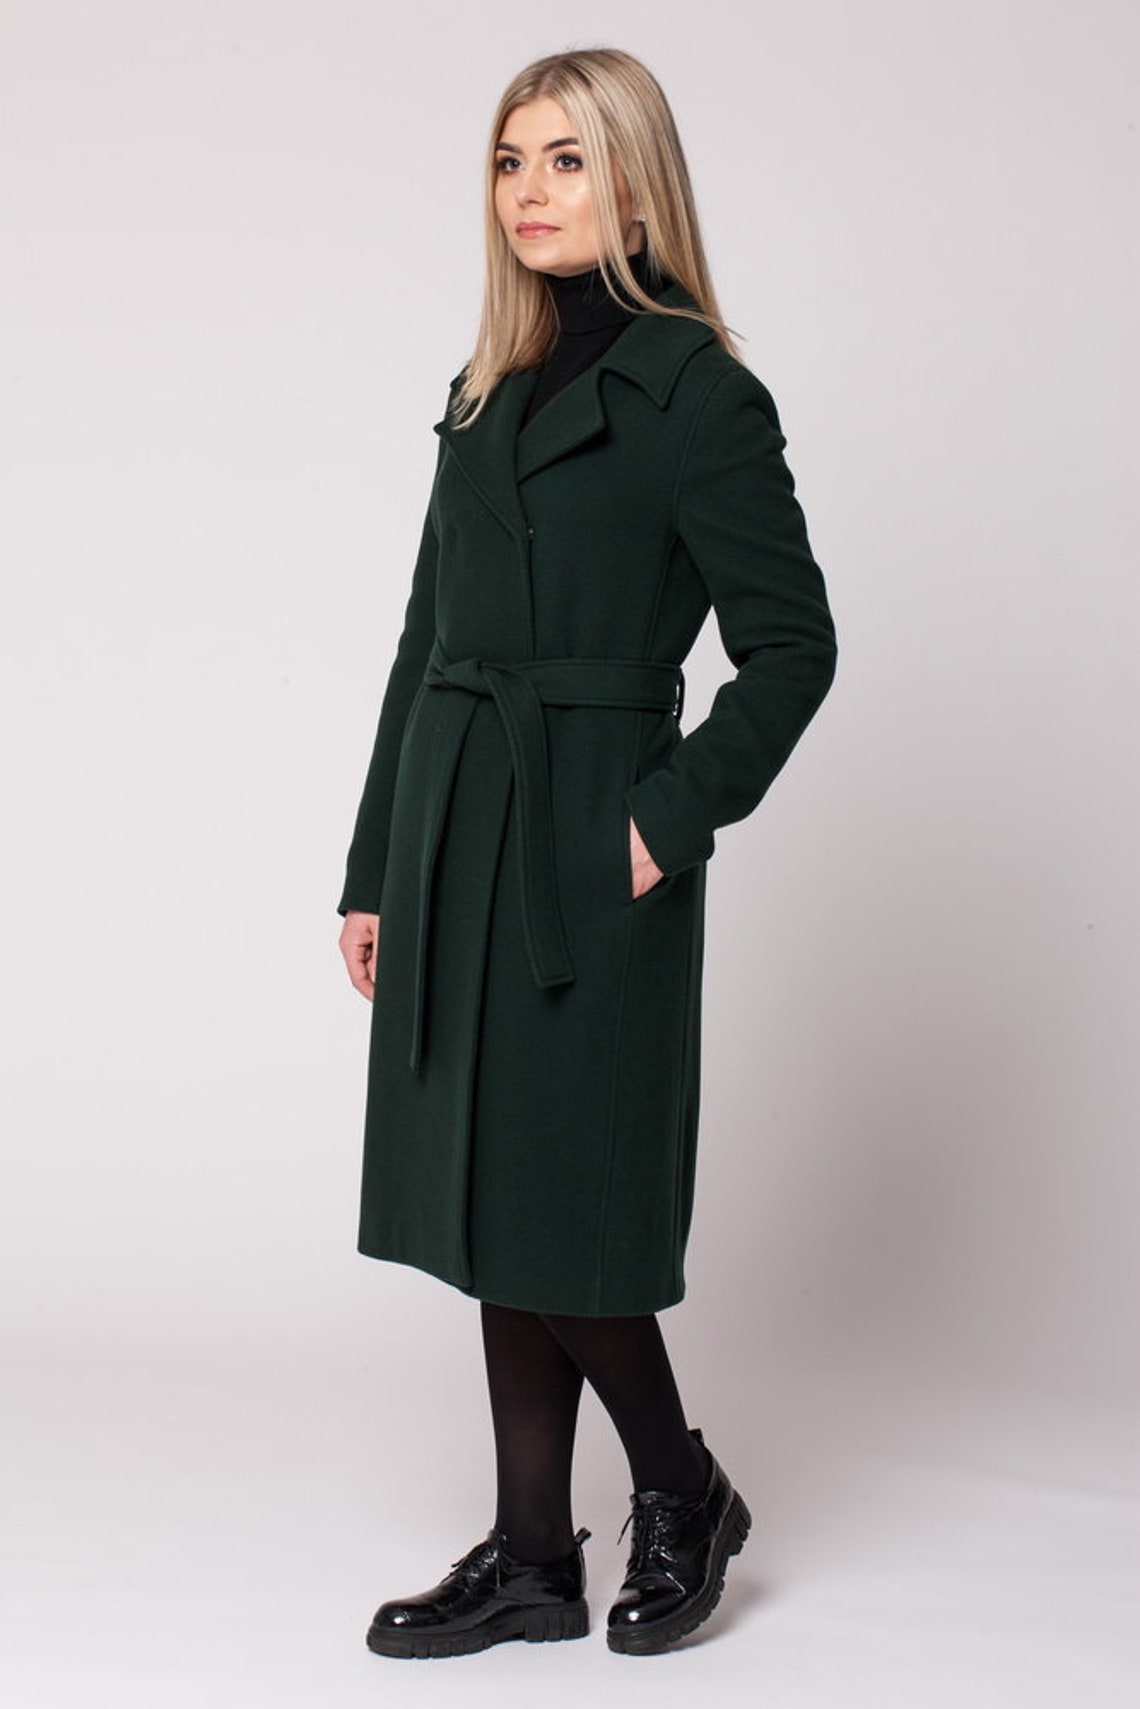 Green wool coat women Long belted coat women knee length | Etsy